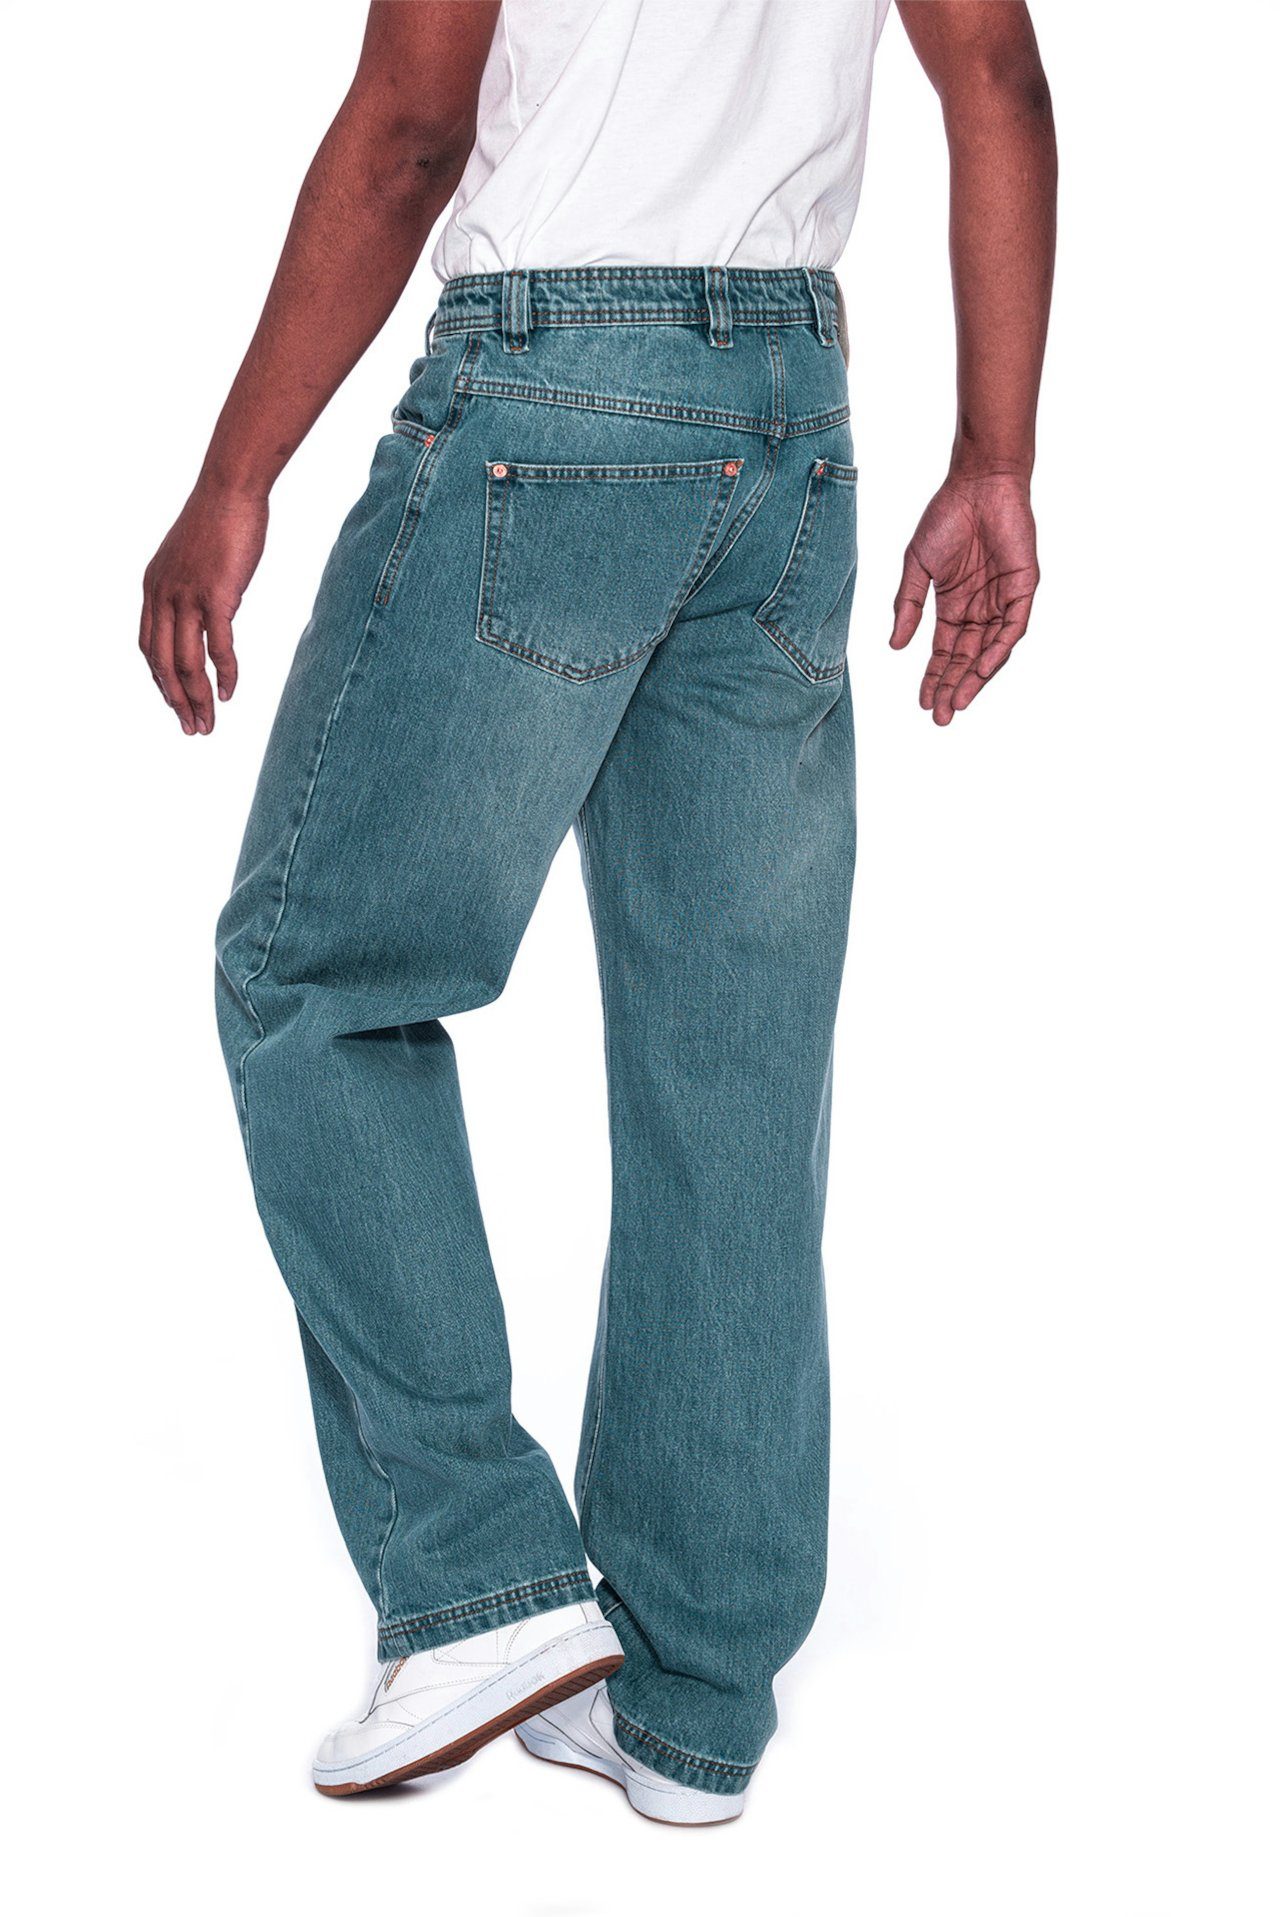 Fit, PICALDI Zicco Leg, lässiger Jeans 474 Gerader Weite Straight Jeans Enemy Schnitt Baggy